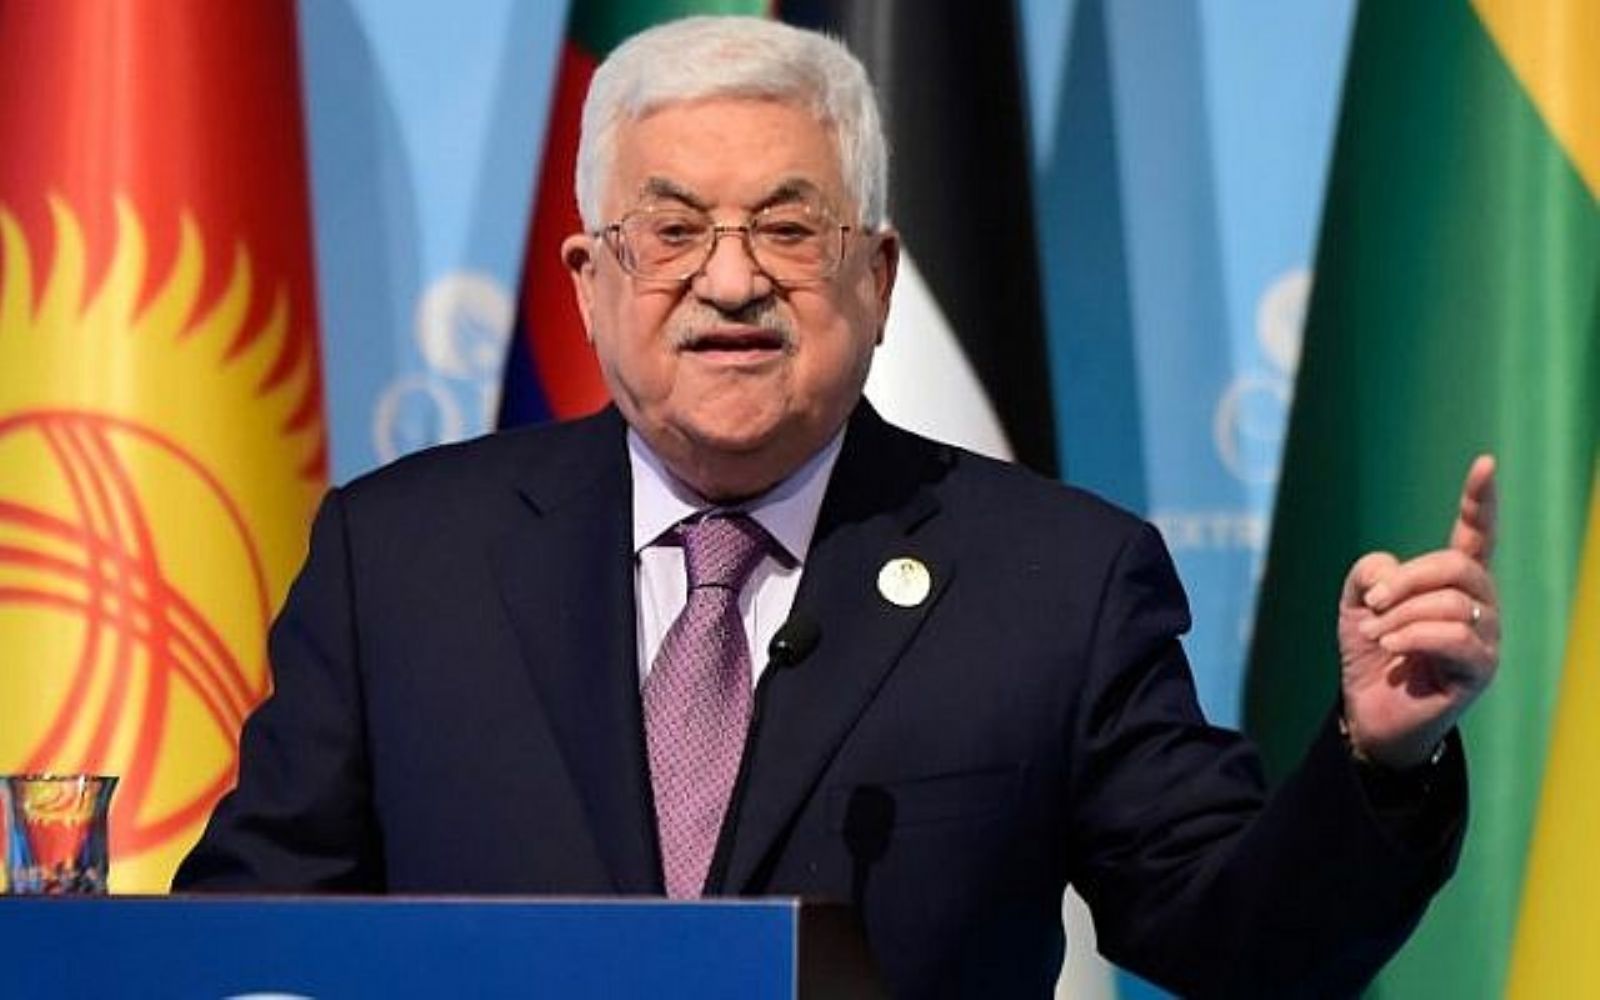 Israel thinks of post-Abbas stage, Israeli minister says